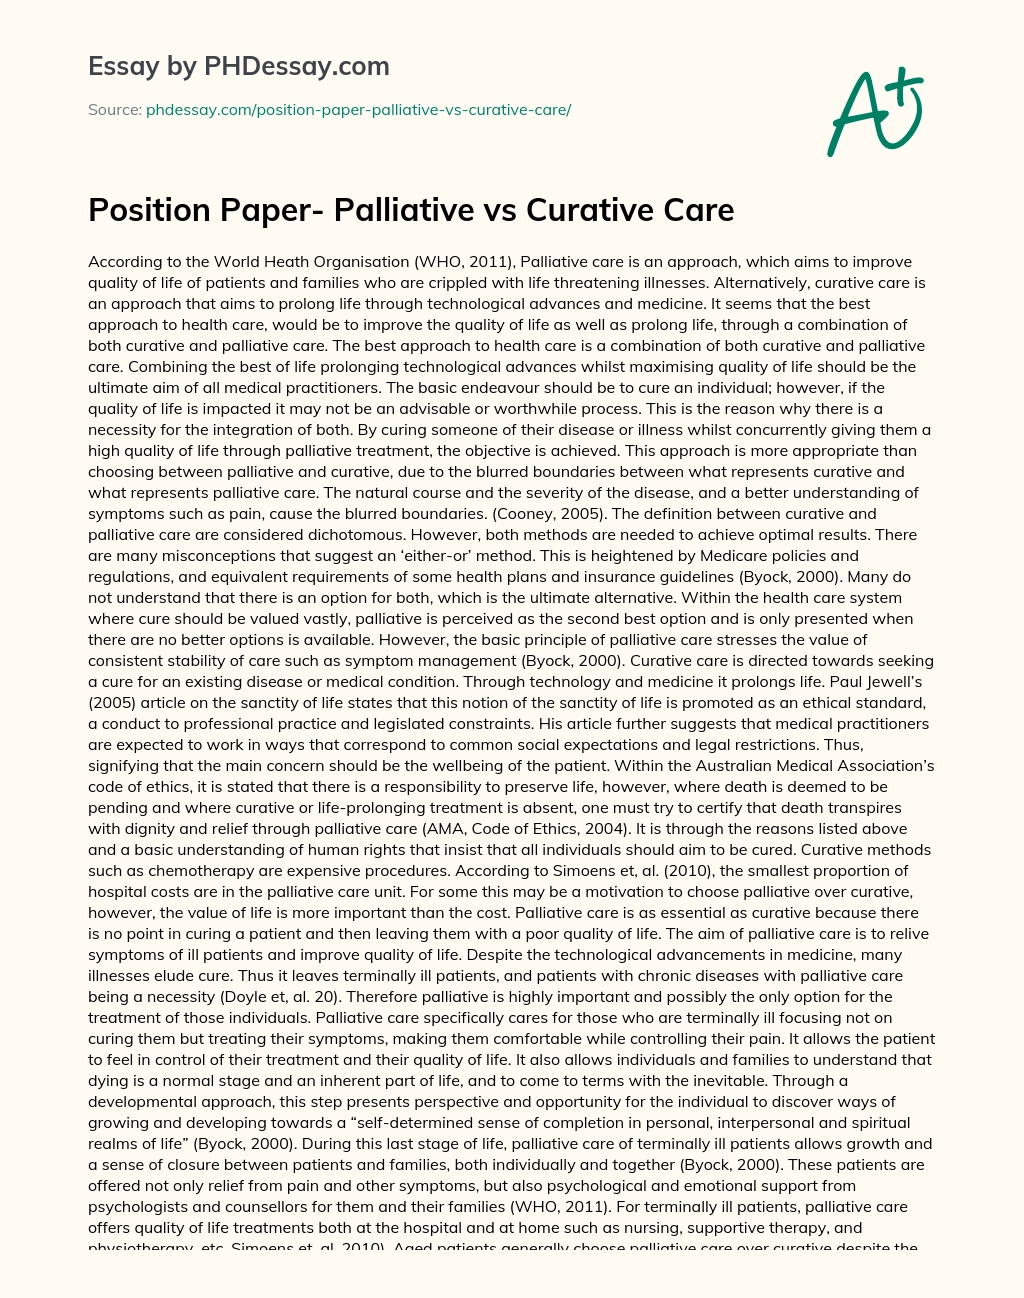 Position Paper- Palliative vs Curative Care essay